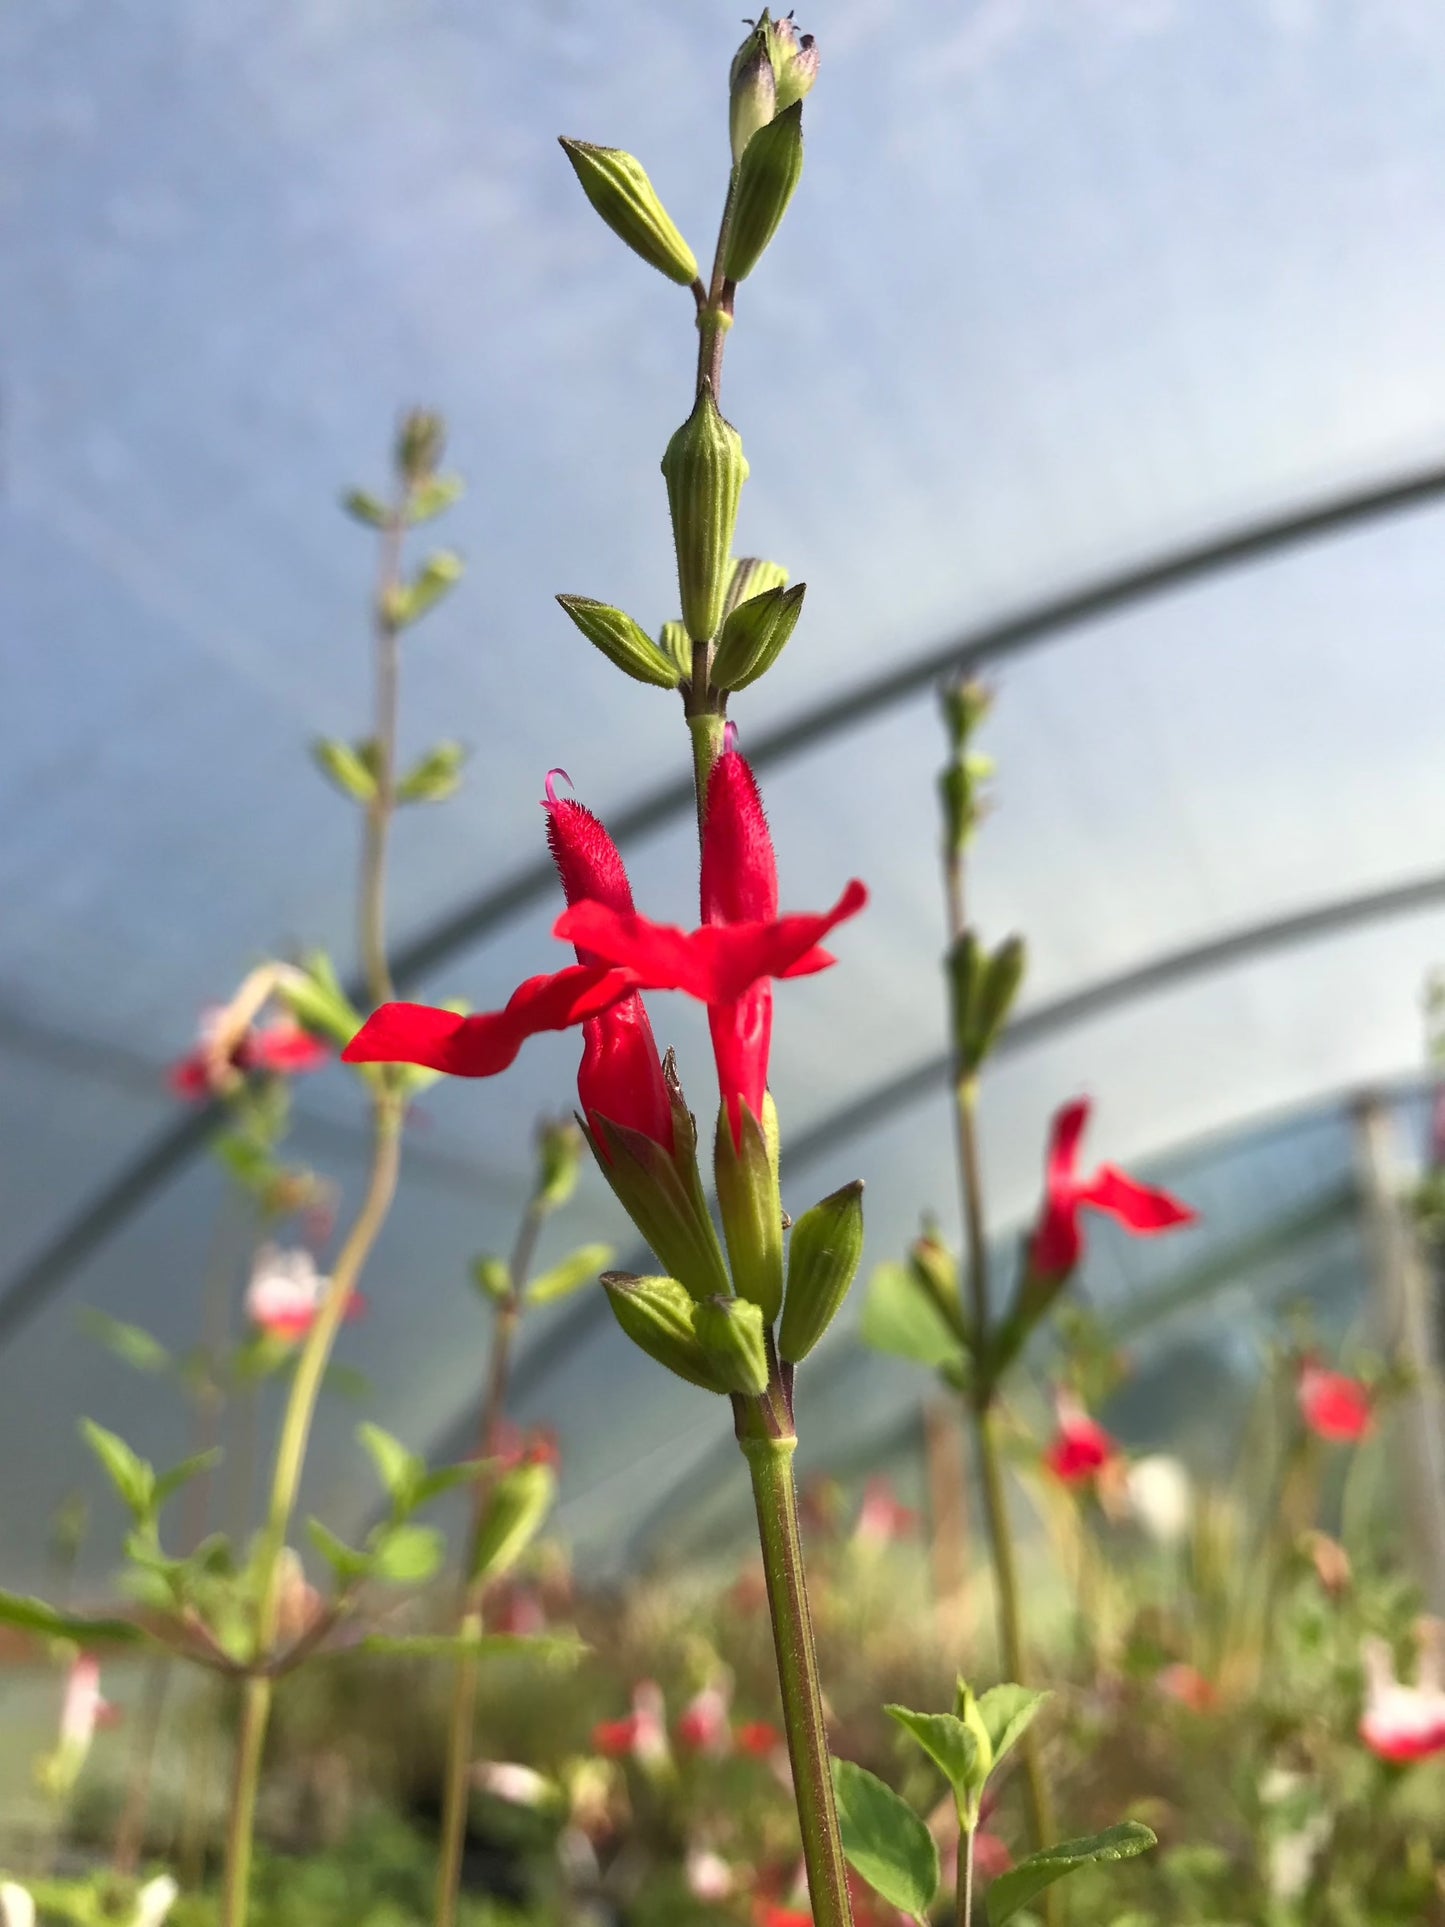 Salvia x jamensis 'Hot Lips' Sage